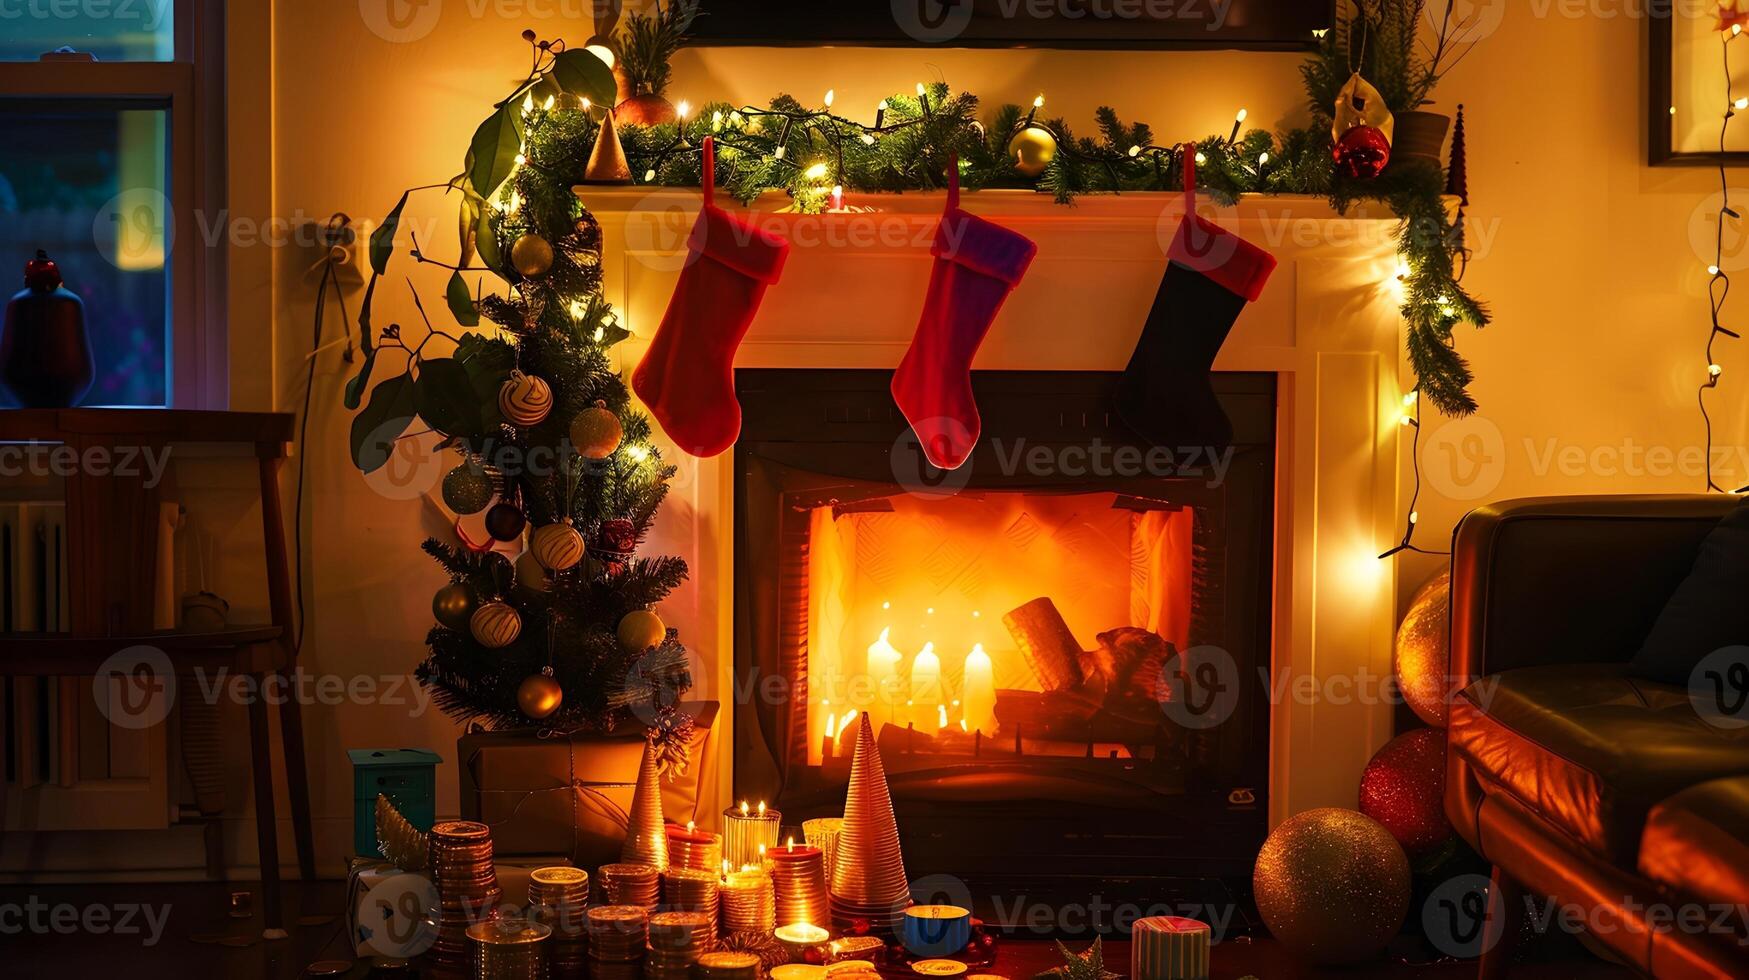 Kerstmis haard met knus decor en warm verlichting in feestelijk huis interieur foto